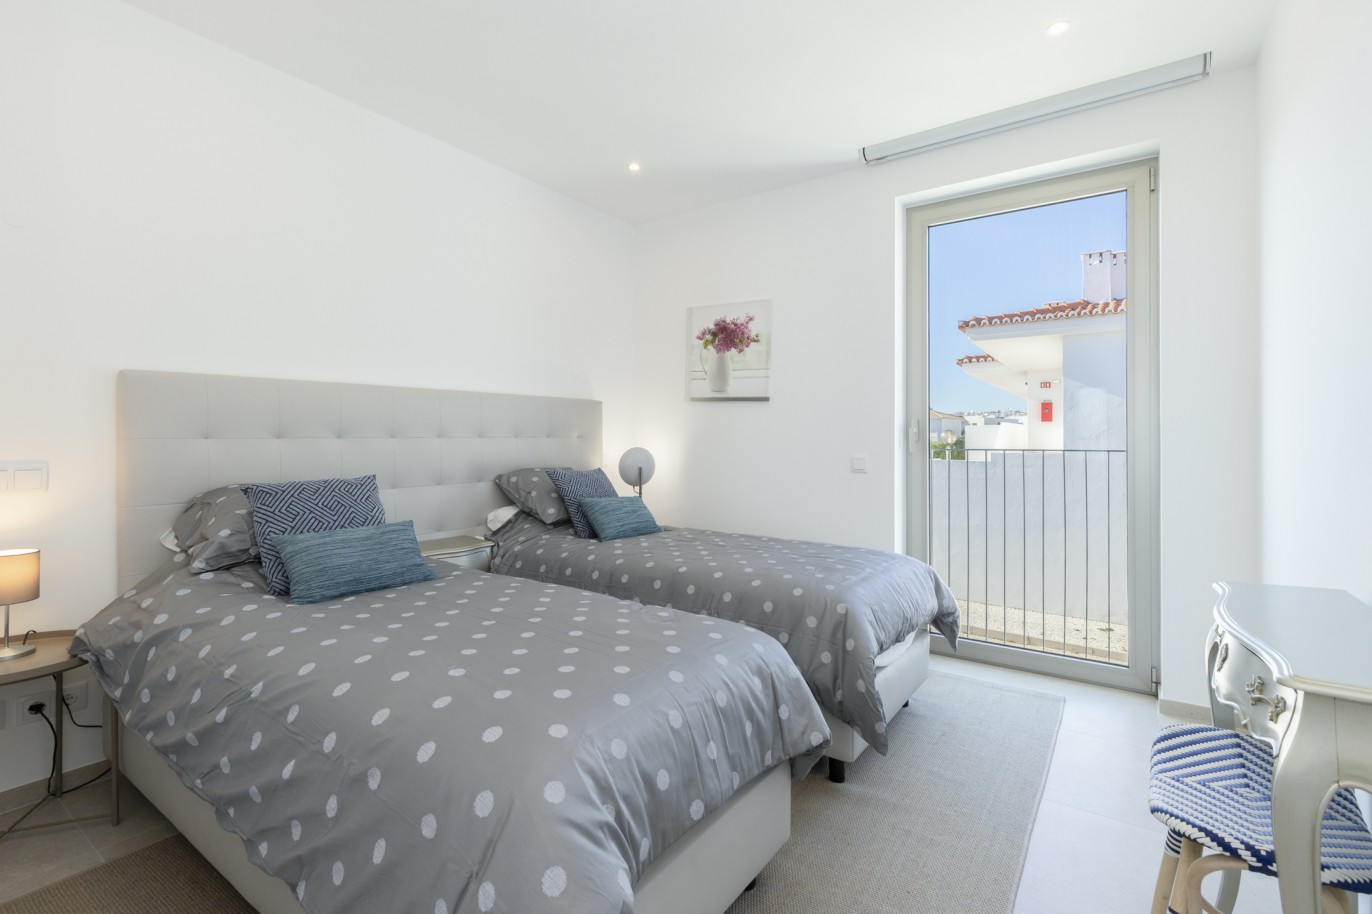 Villa de 3 chambres en copropriété privée, à vendre, à Lagos, Algarve_217636